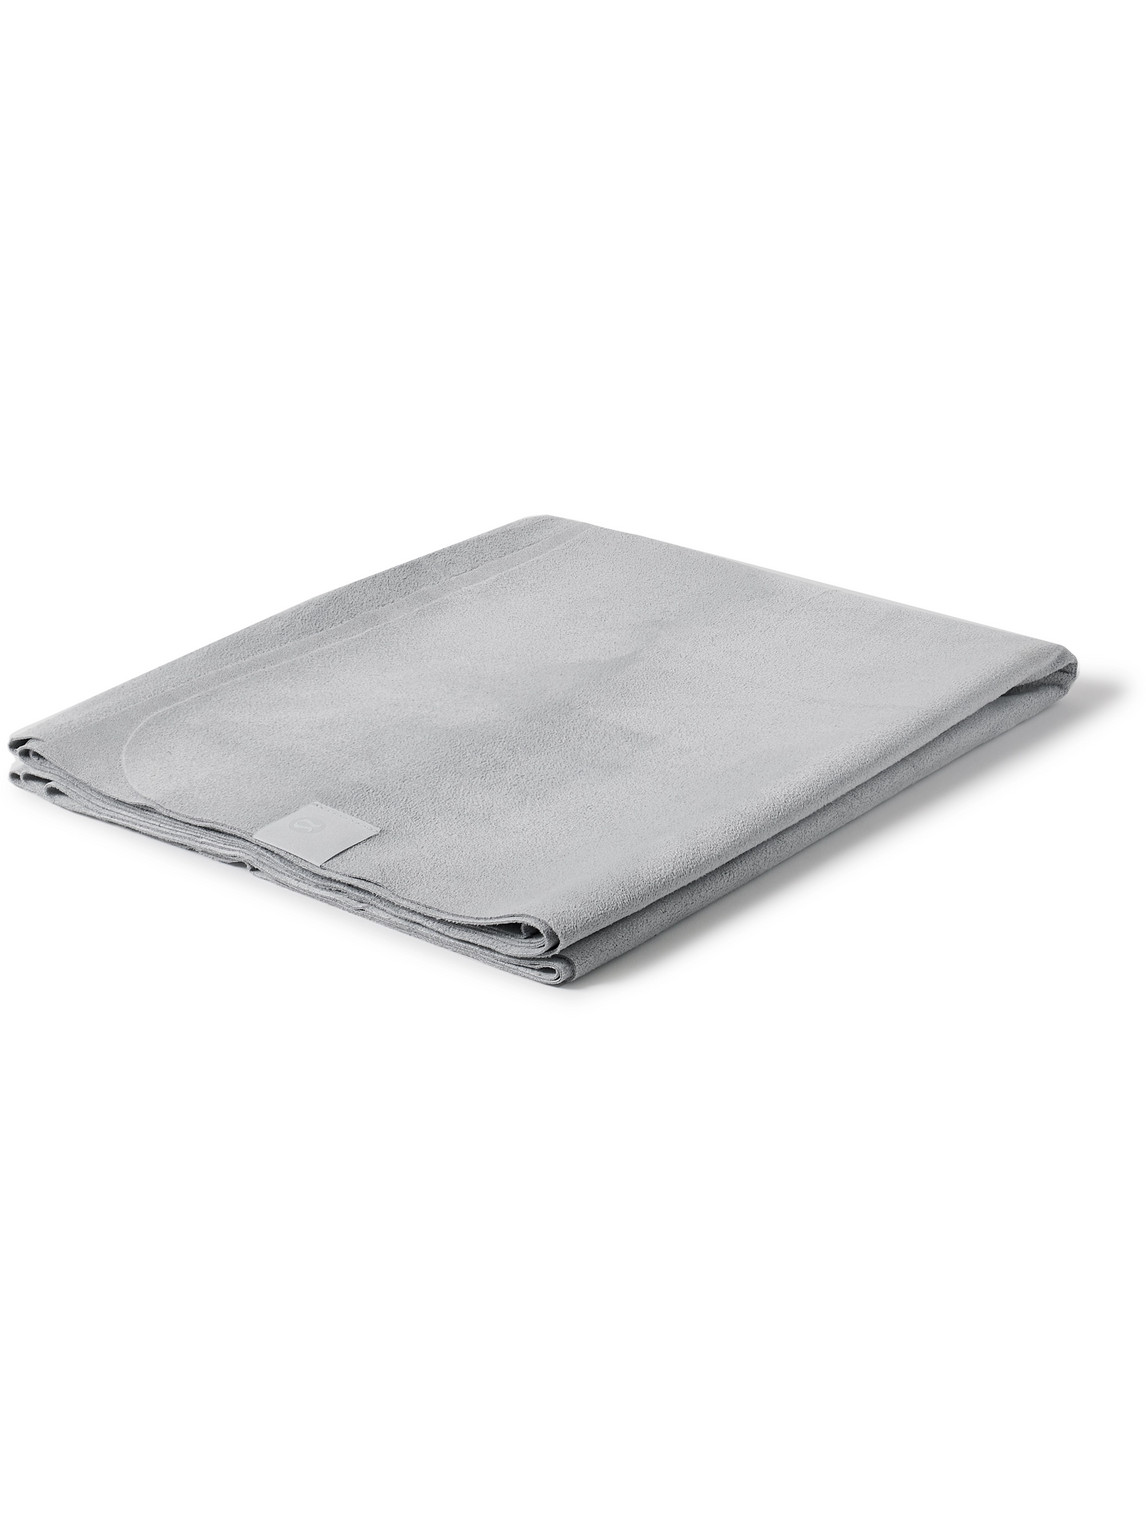 Lululemon The (big) Microfibre Yoga Mat Towel In Grey